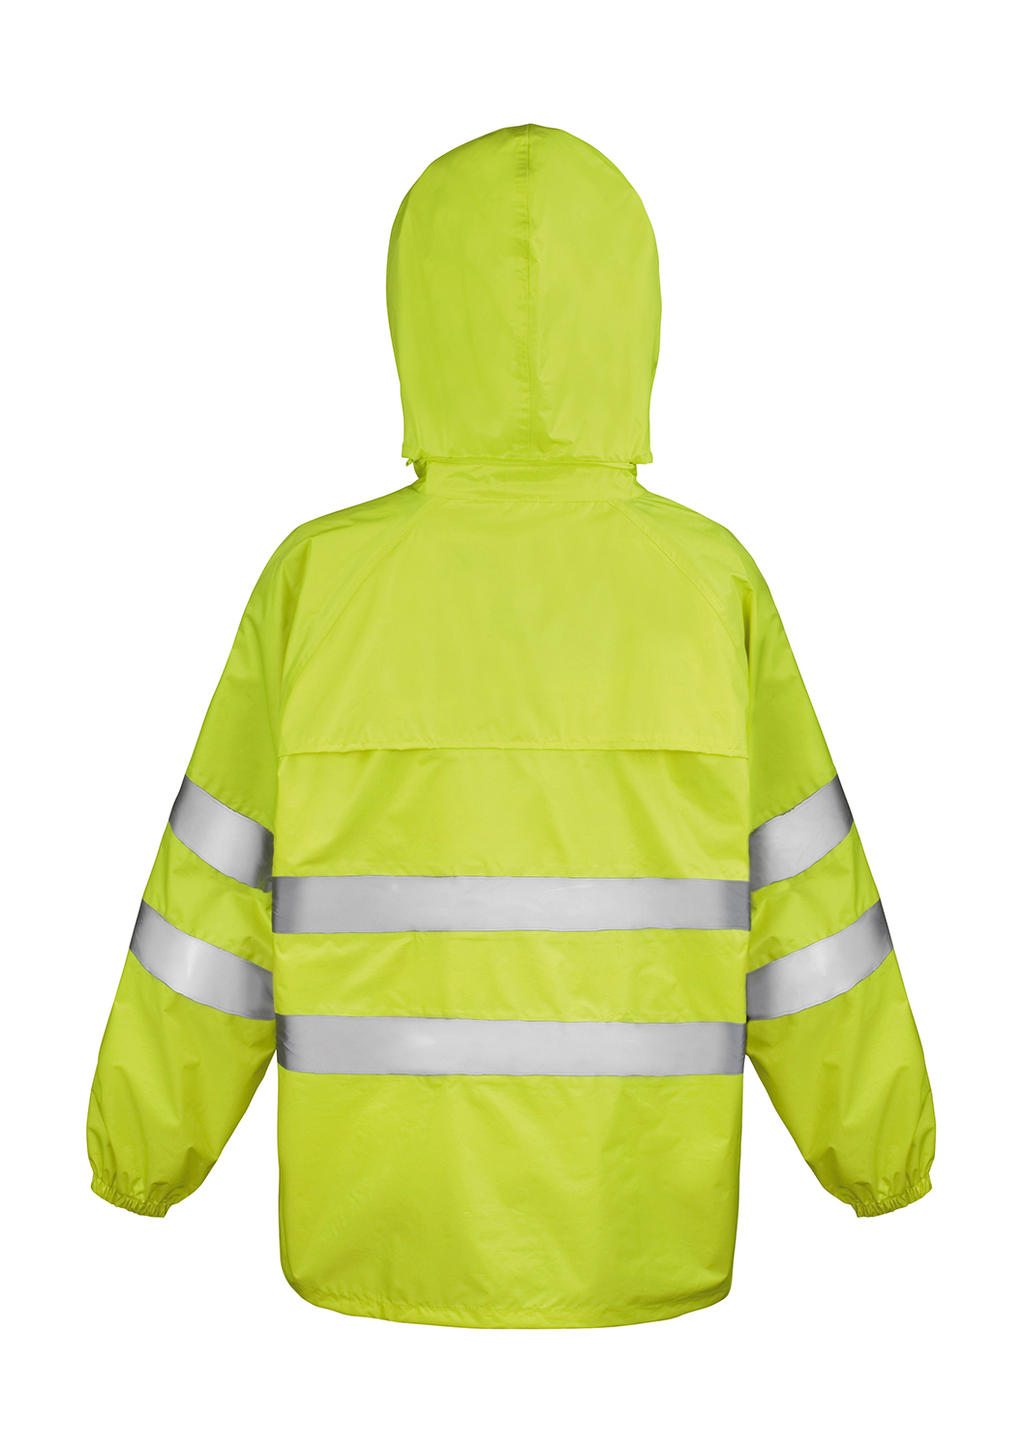  Hi-Vis Waterproof Suit in Farbe Fluorescent Yellow